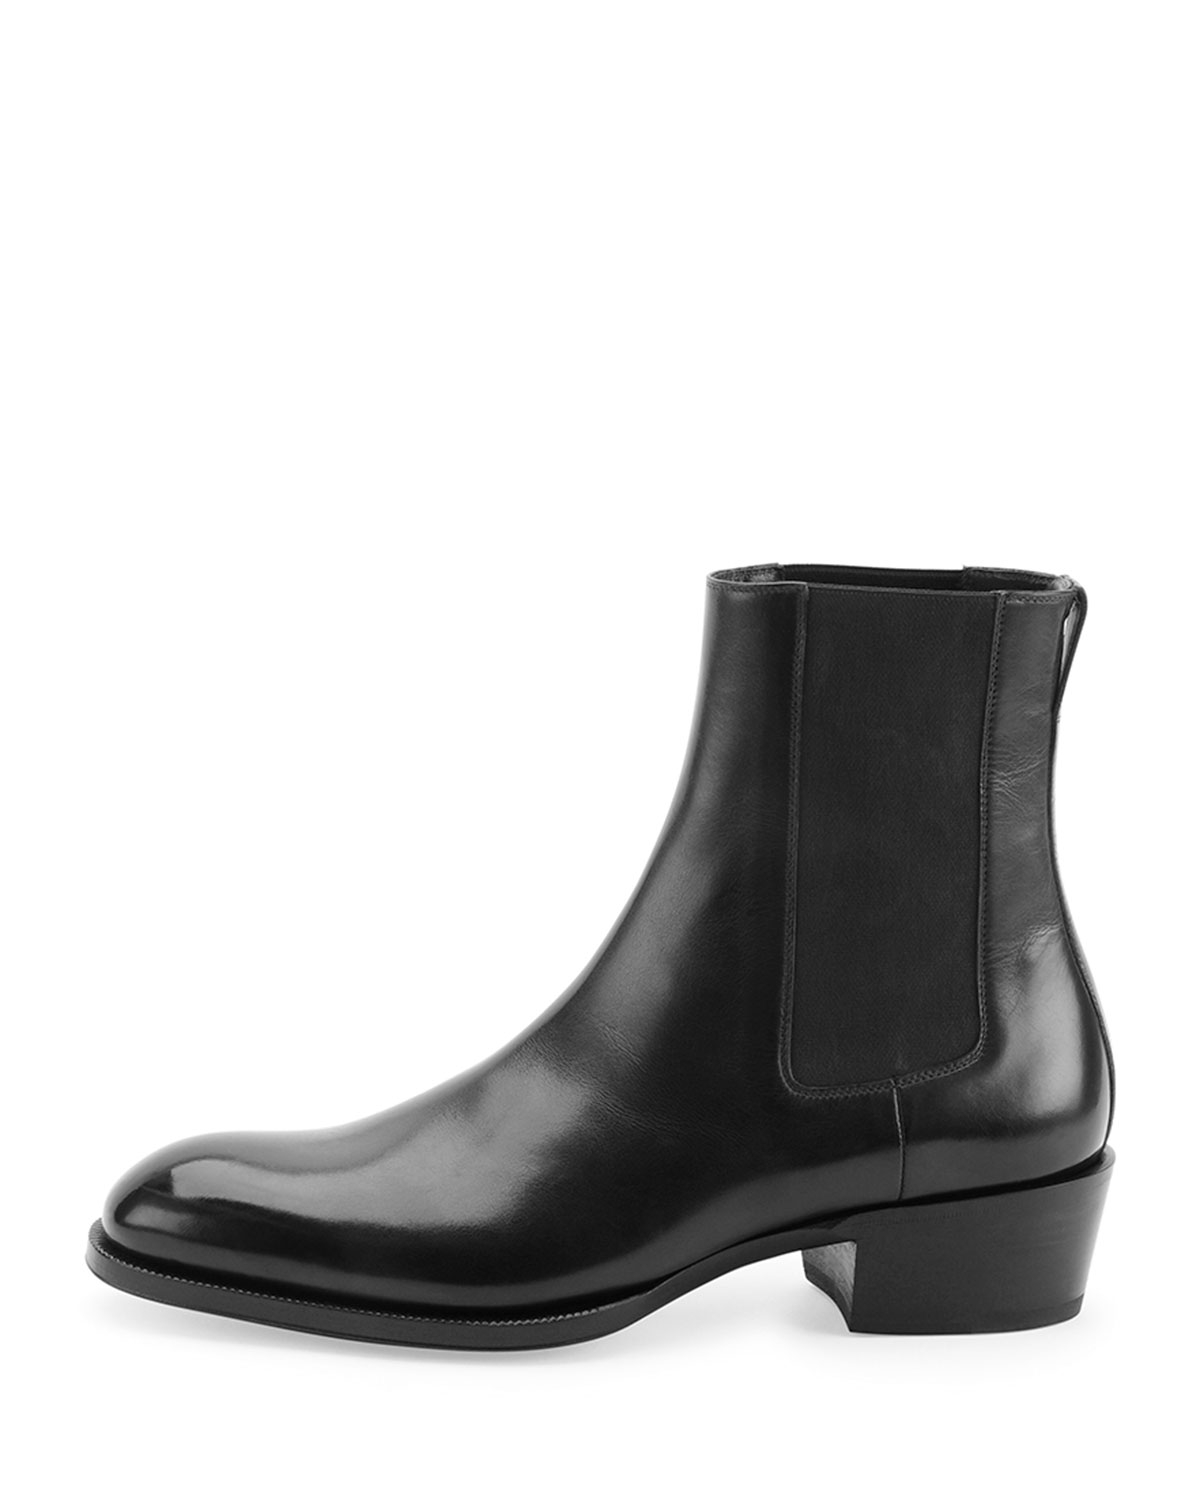 Lyst - Tom Ford Chelsea Boot in Black for Men